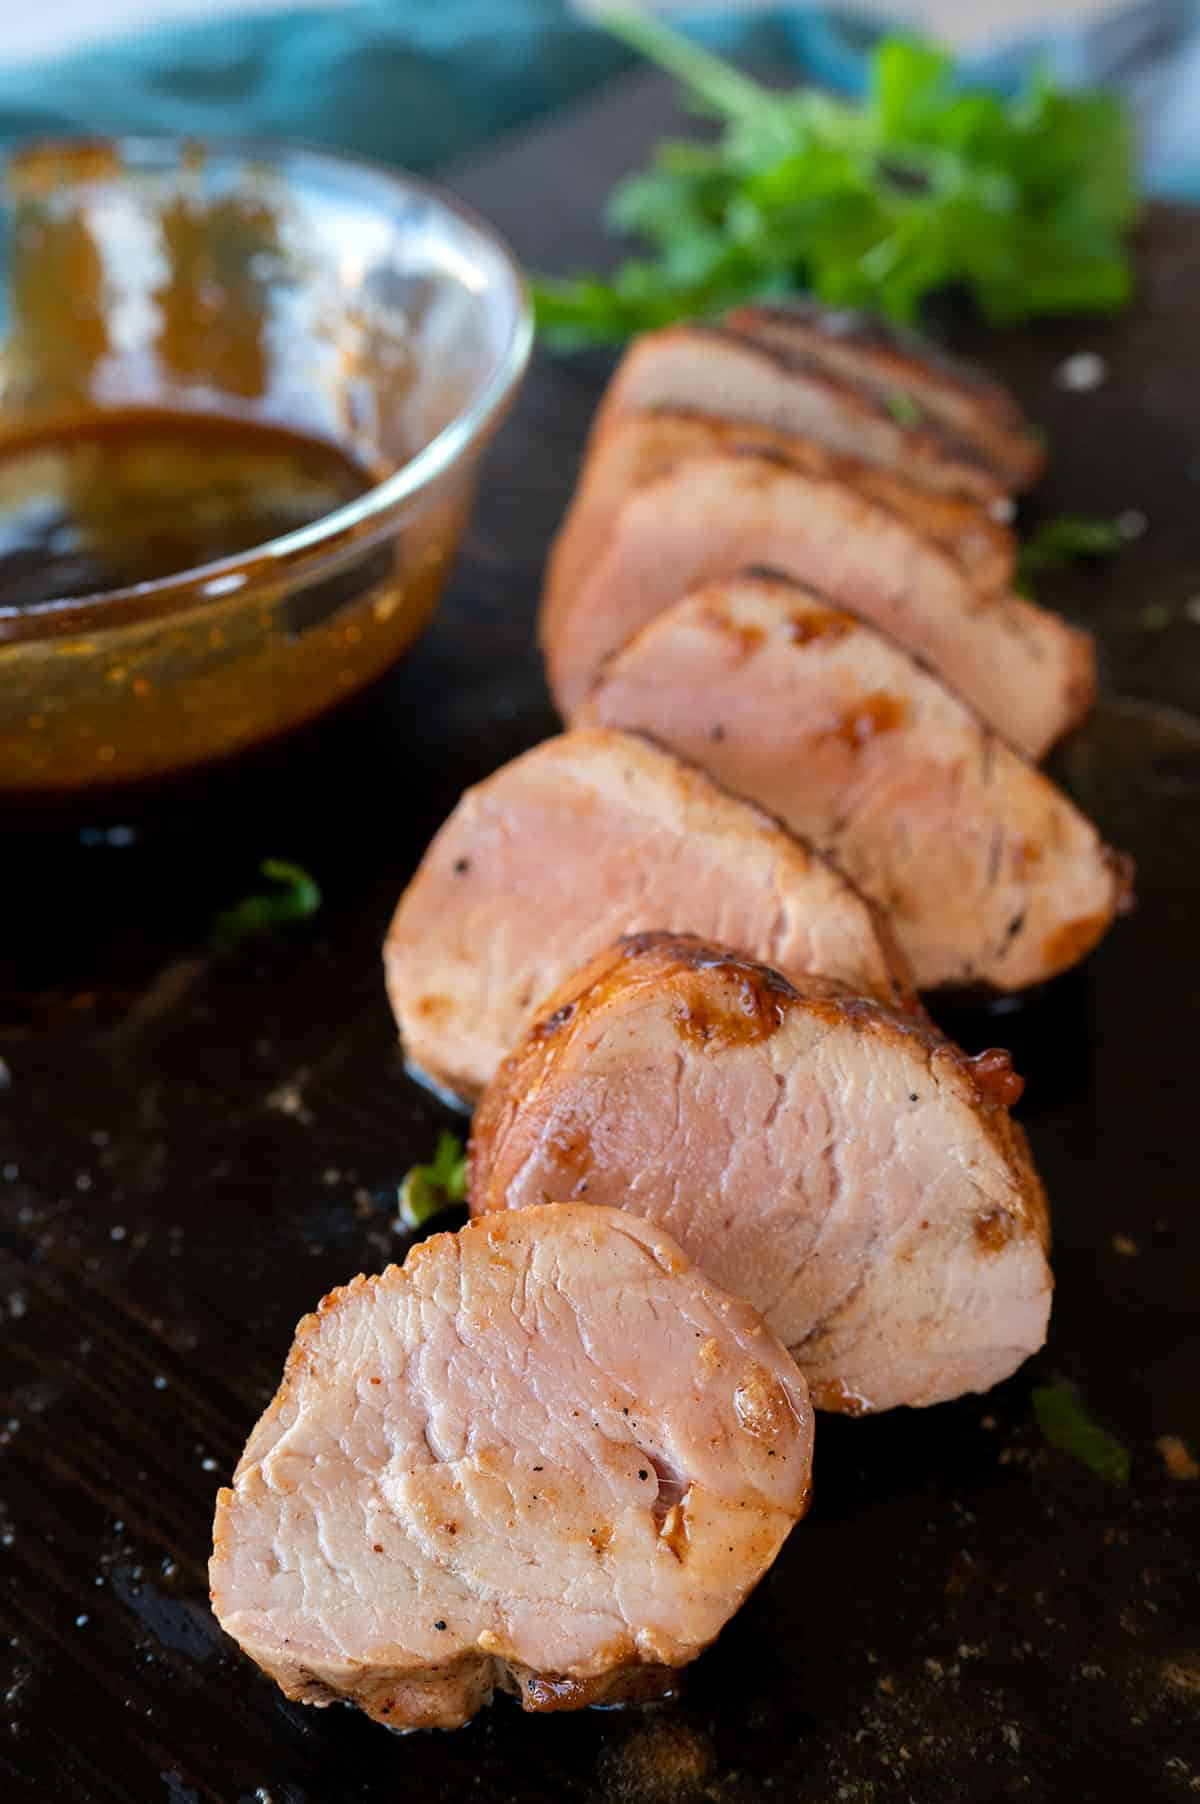 juicy slices of grilled pork tenderloin.